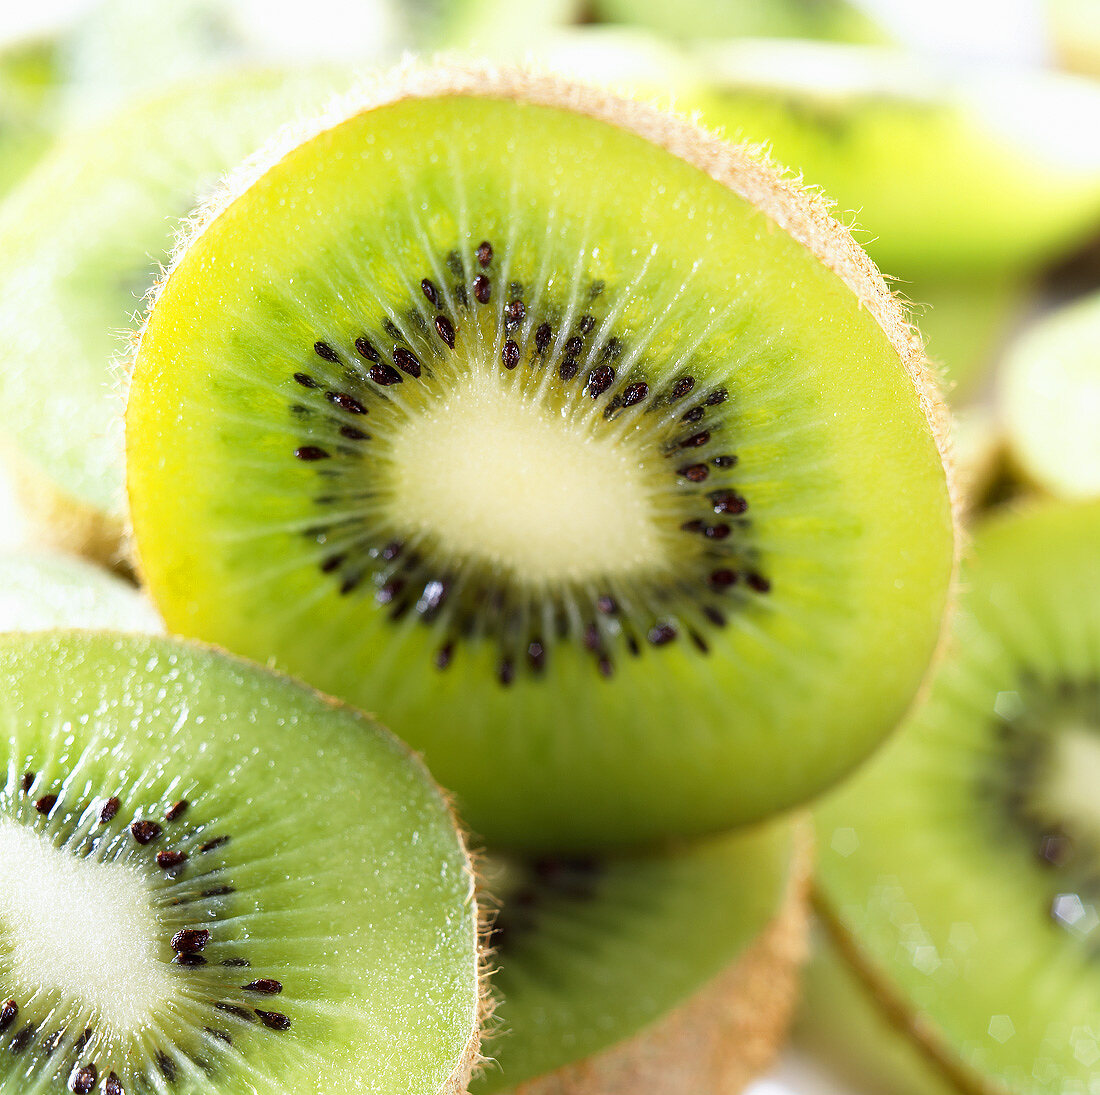 Halved kiwi fruits (close-up)